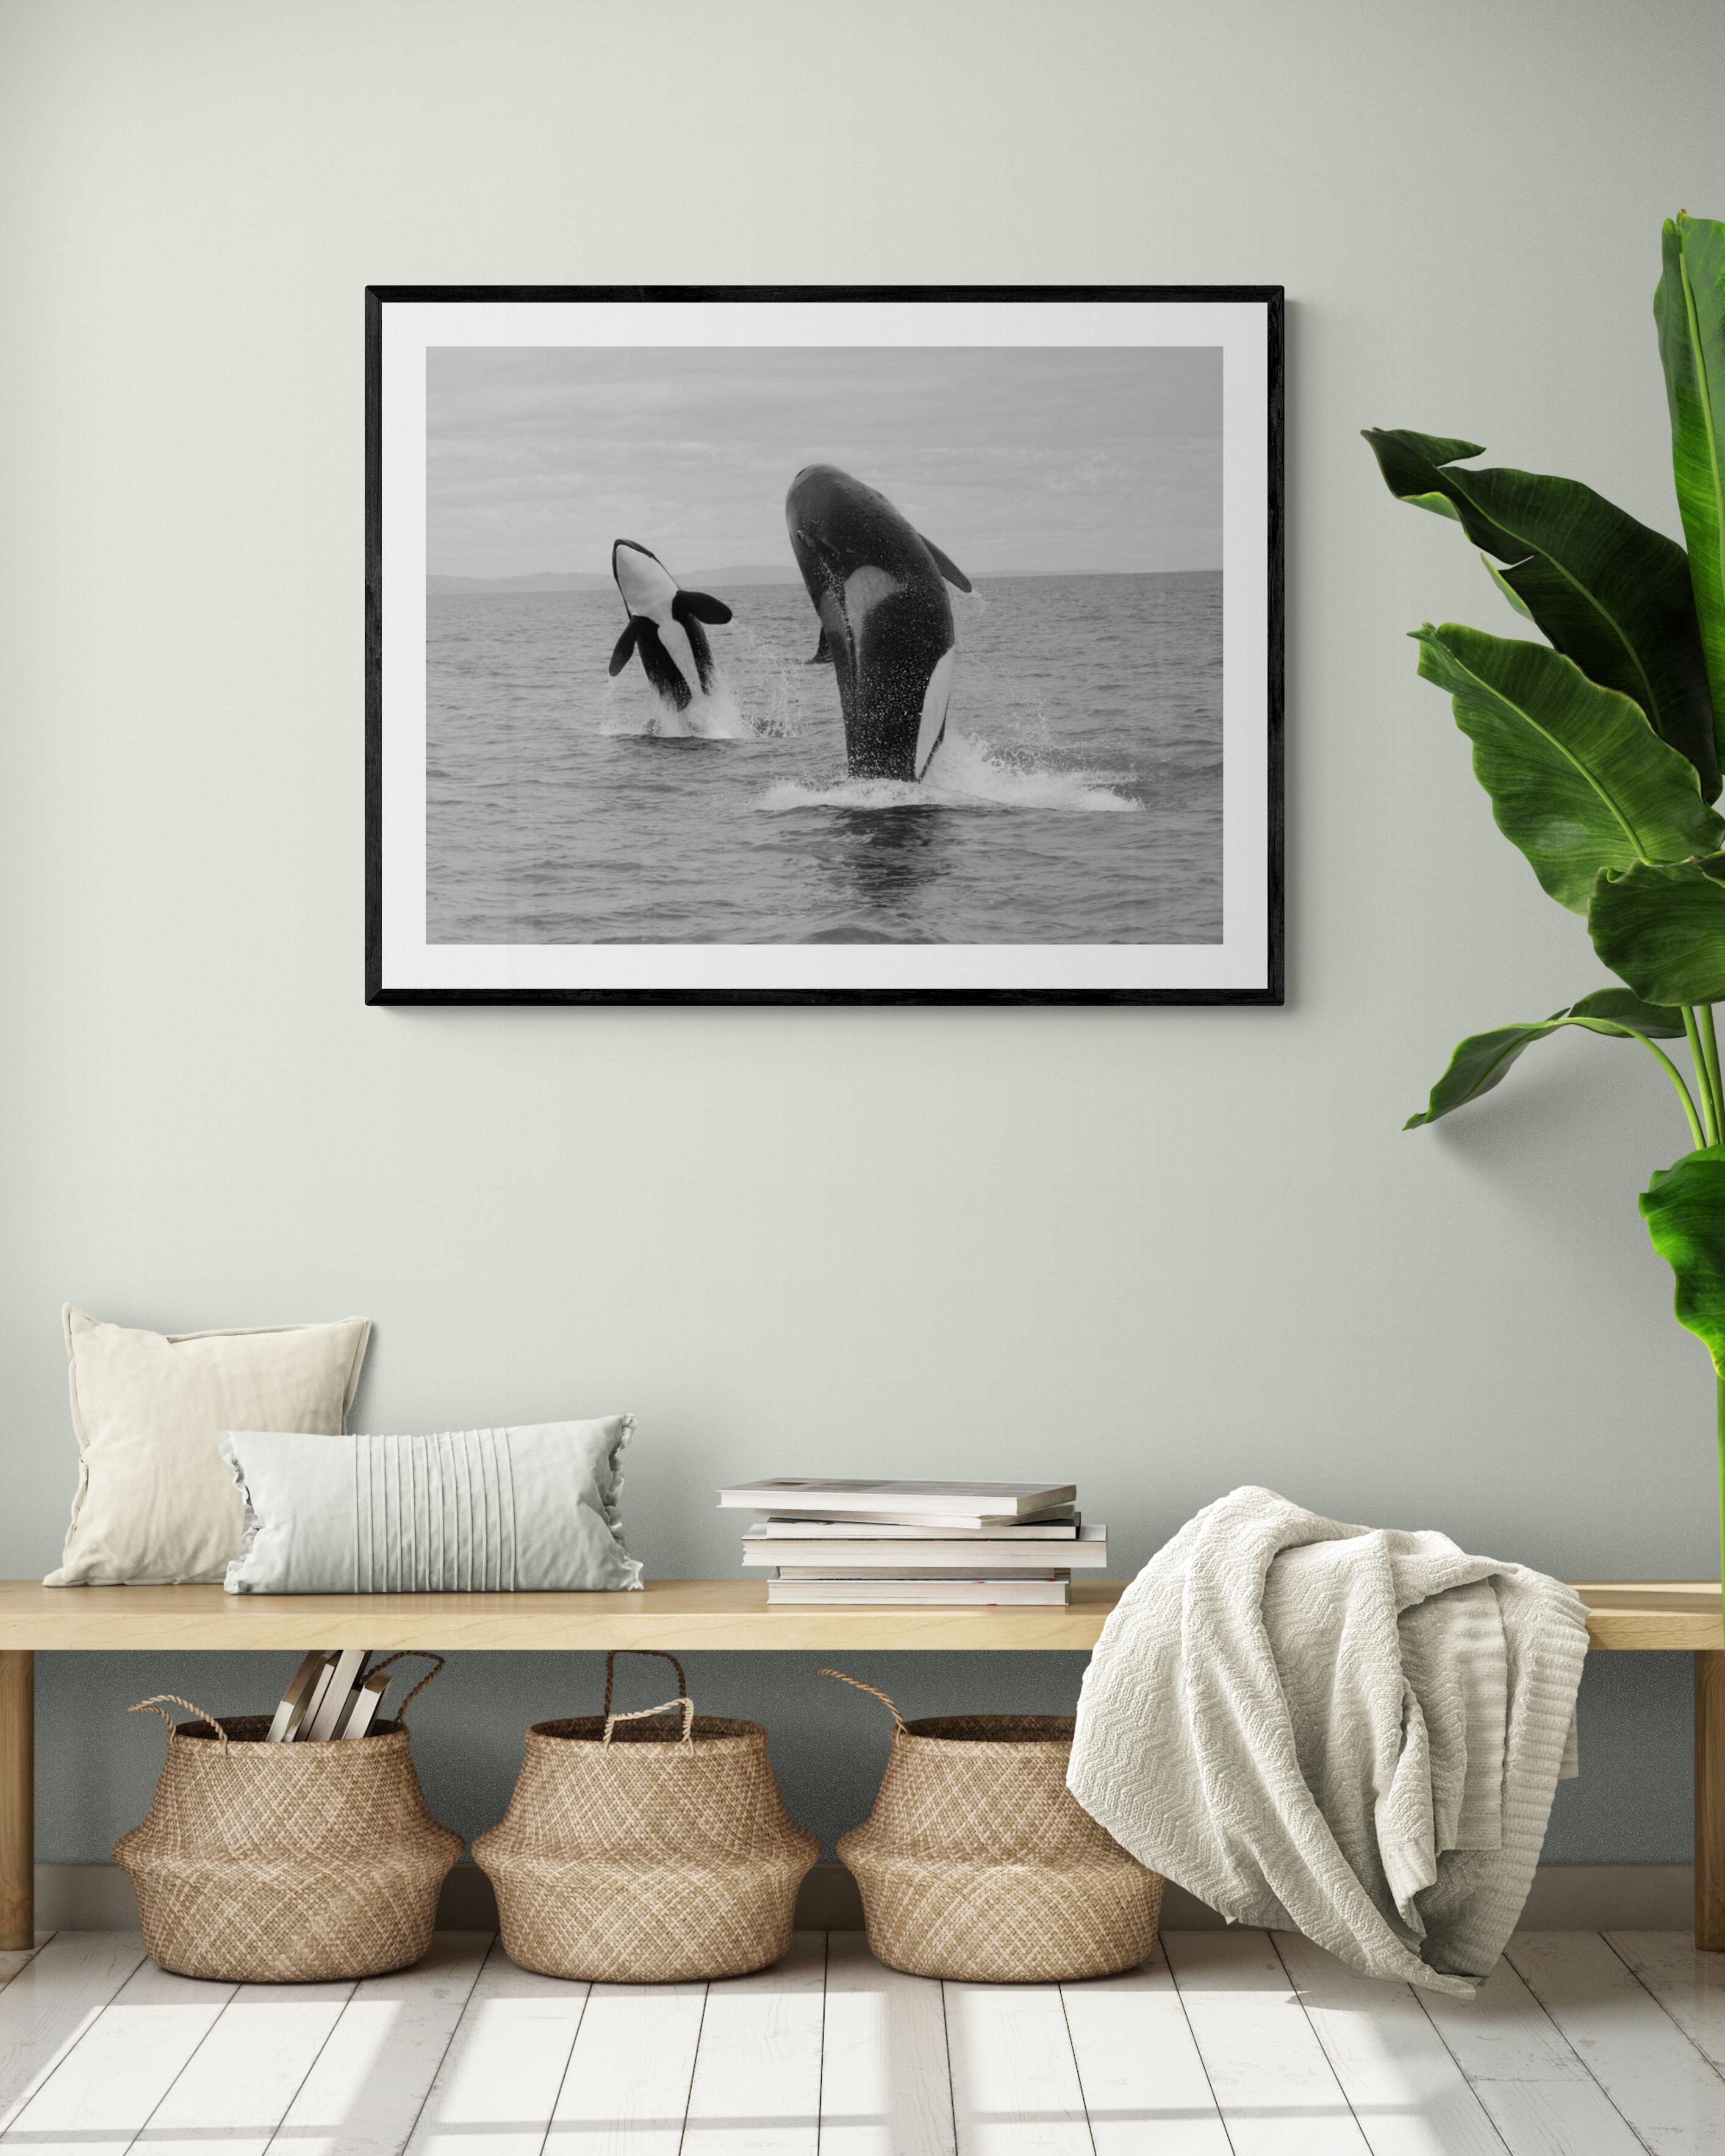  Dieses Bild wurde vor den San Juan Islands aufgenommen und ist das einzige bekannte Bild eines doppelten Synchronbruchs mit zwei erwachsenen Orcas. Das war wirklich ein einmaliges Ereignis.
Dies ist das erste Mal, dass dieses Bild zum Verkauf